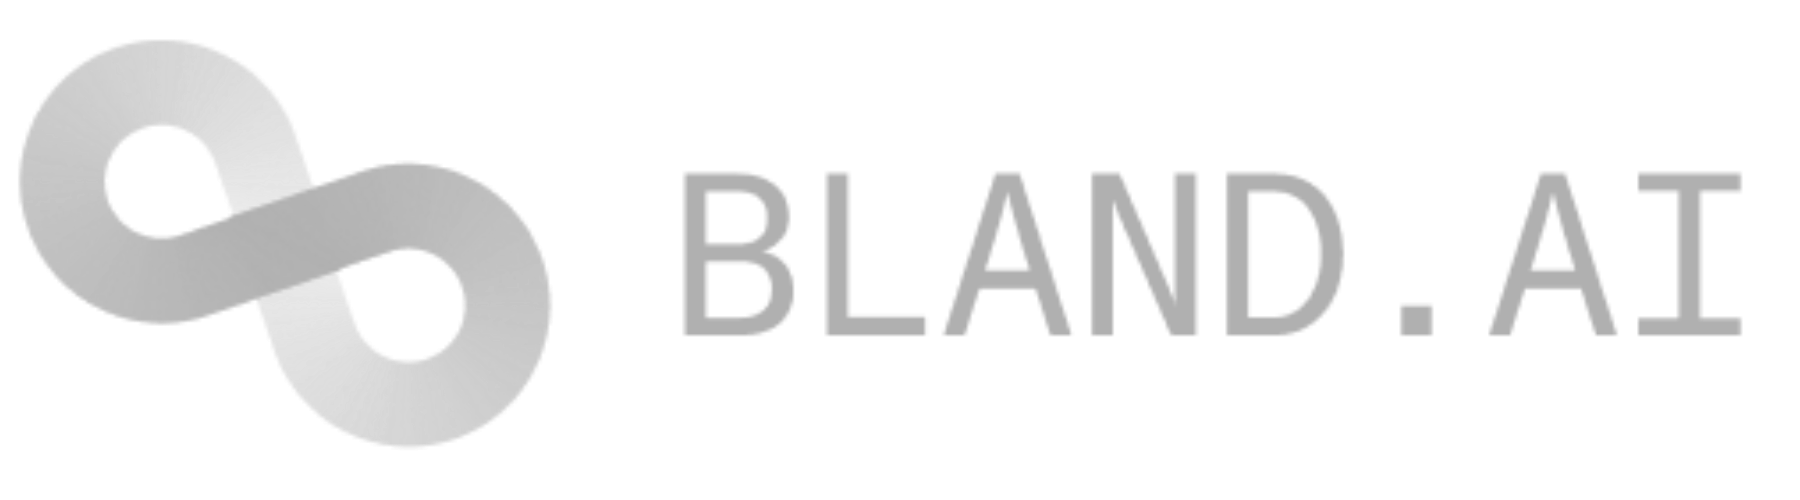 Bland logo